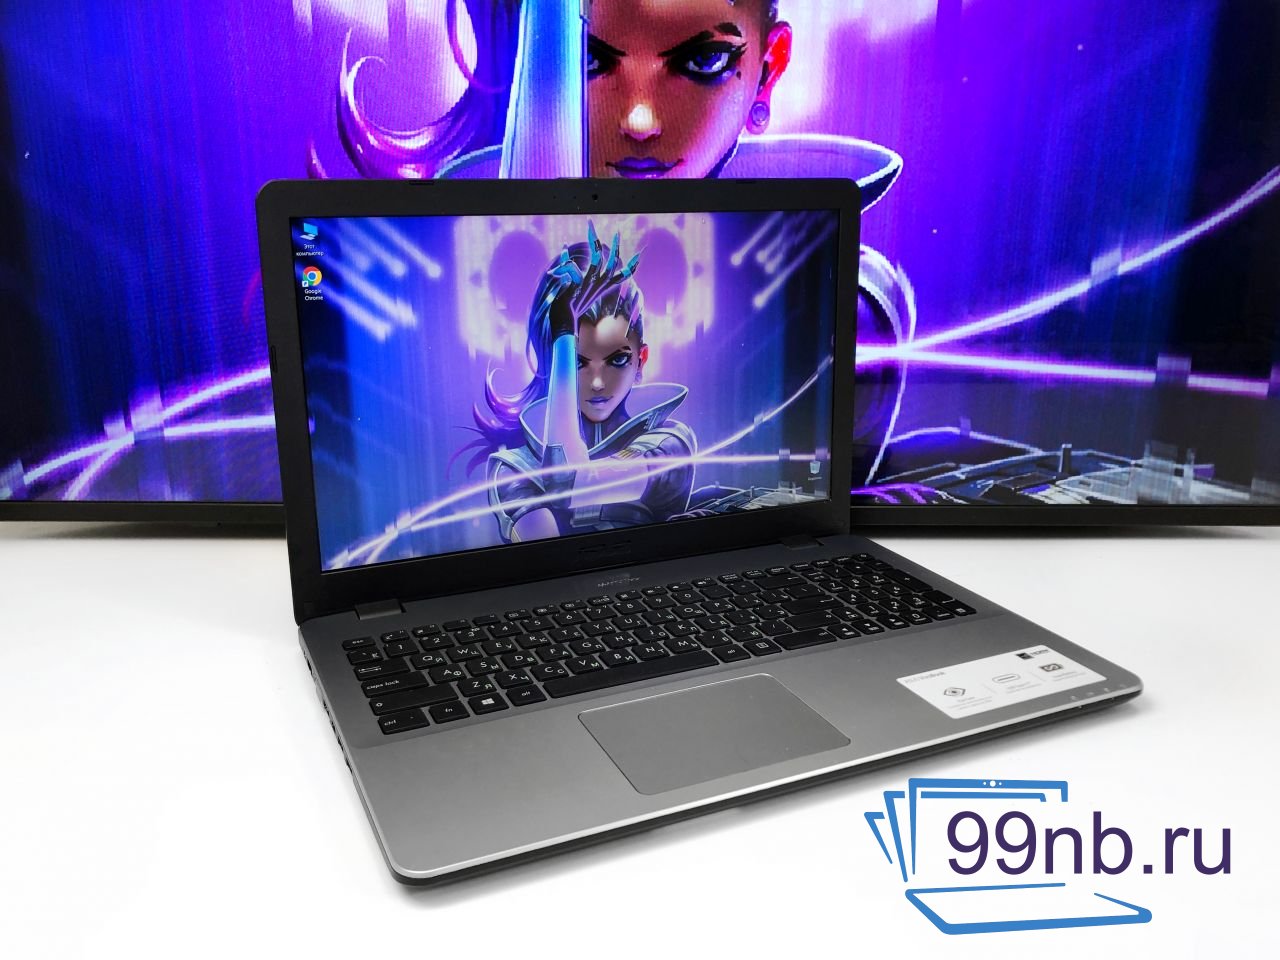  Игровой ноутбук Asus Intel+Geforce+1 Tb HDD